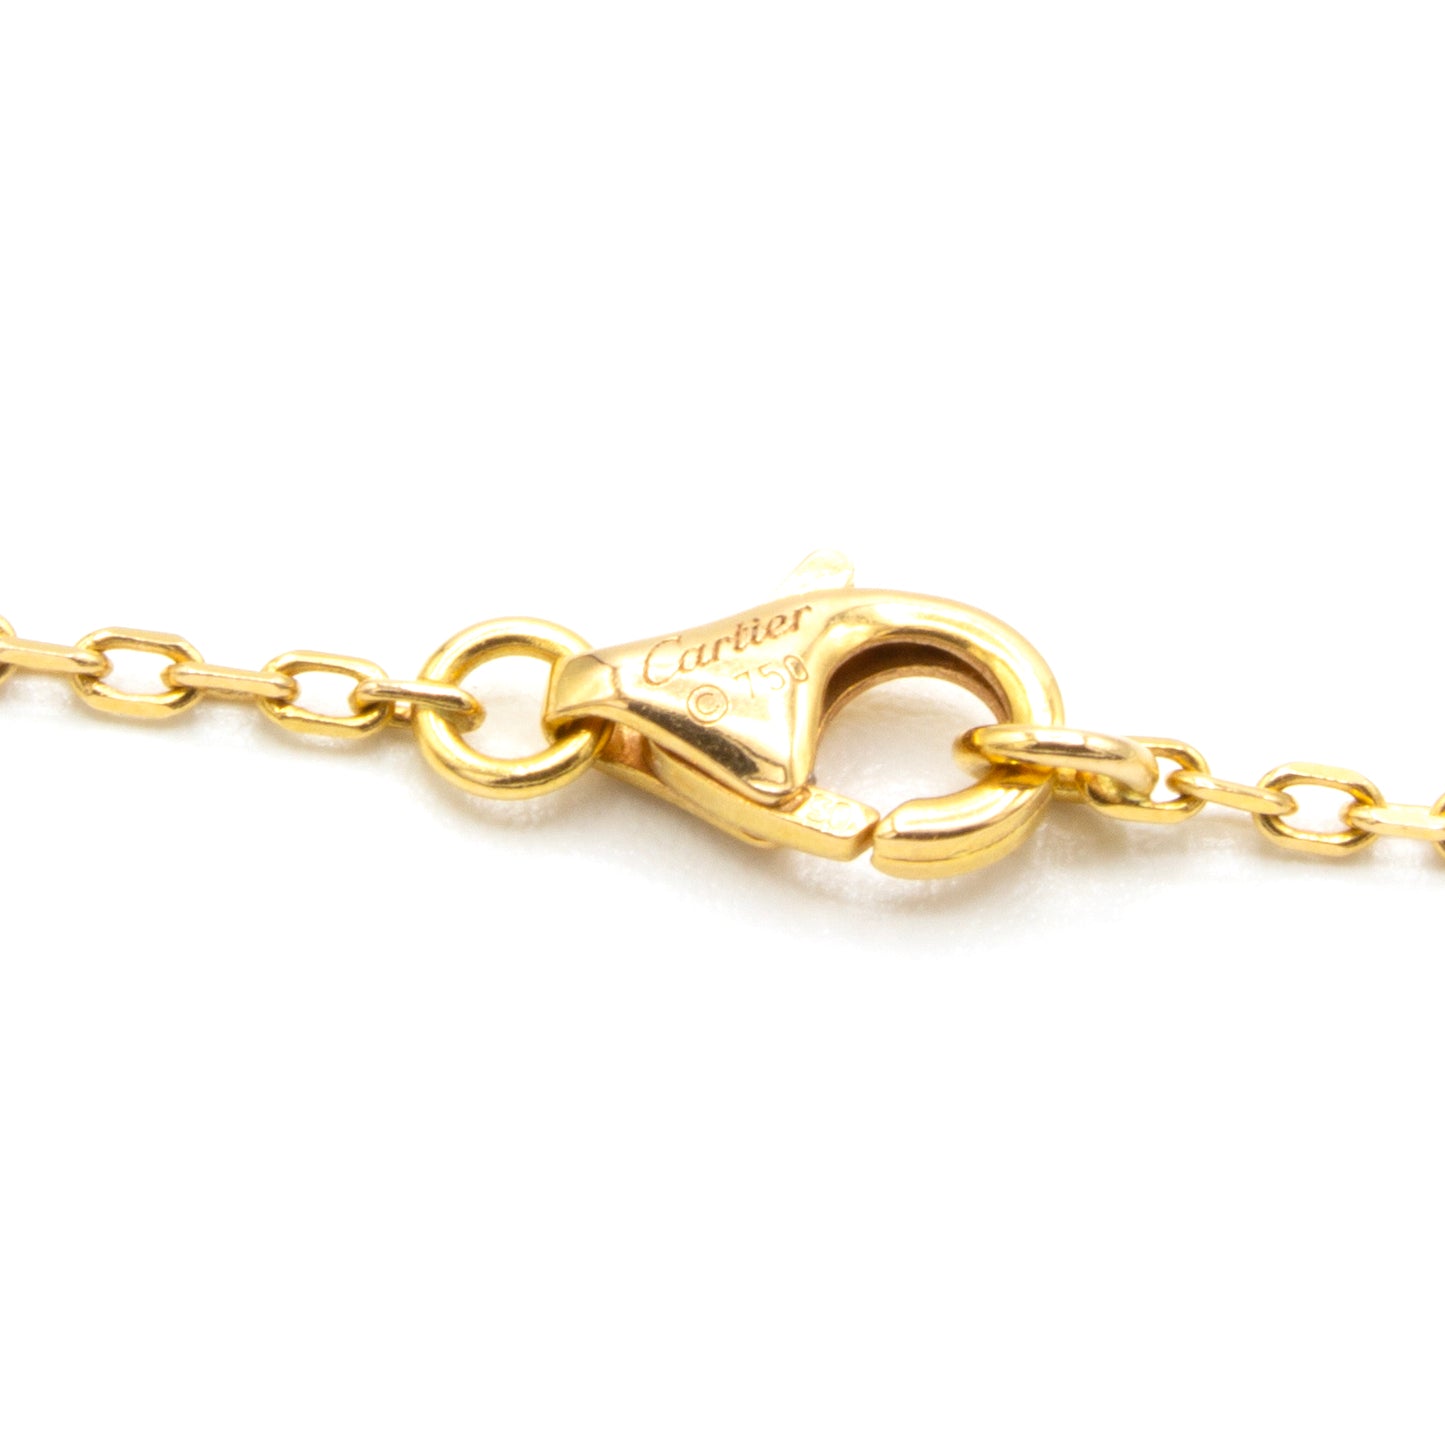 Cartier Coeur necklace